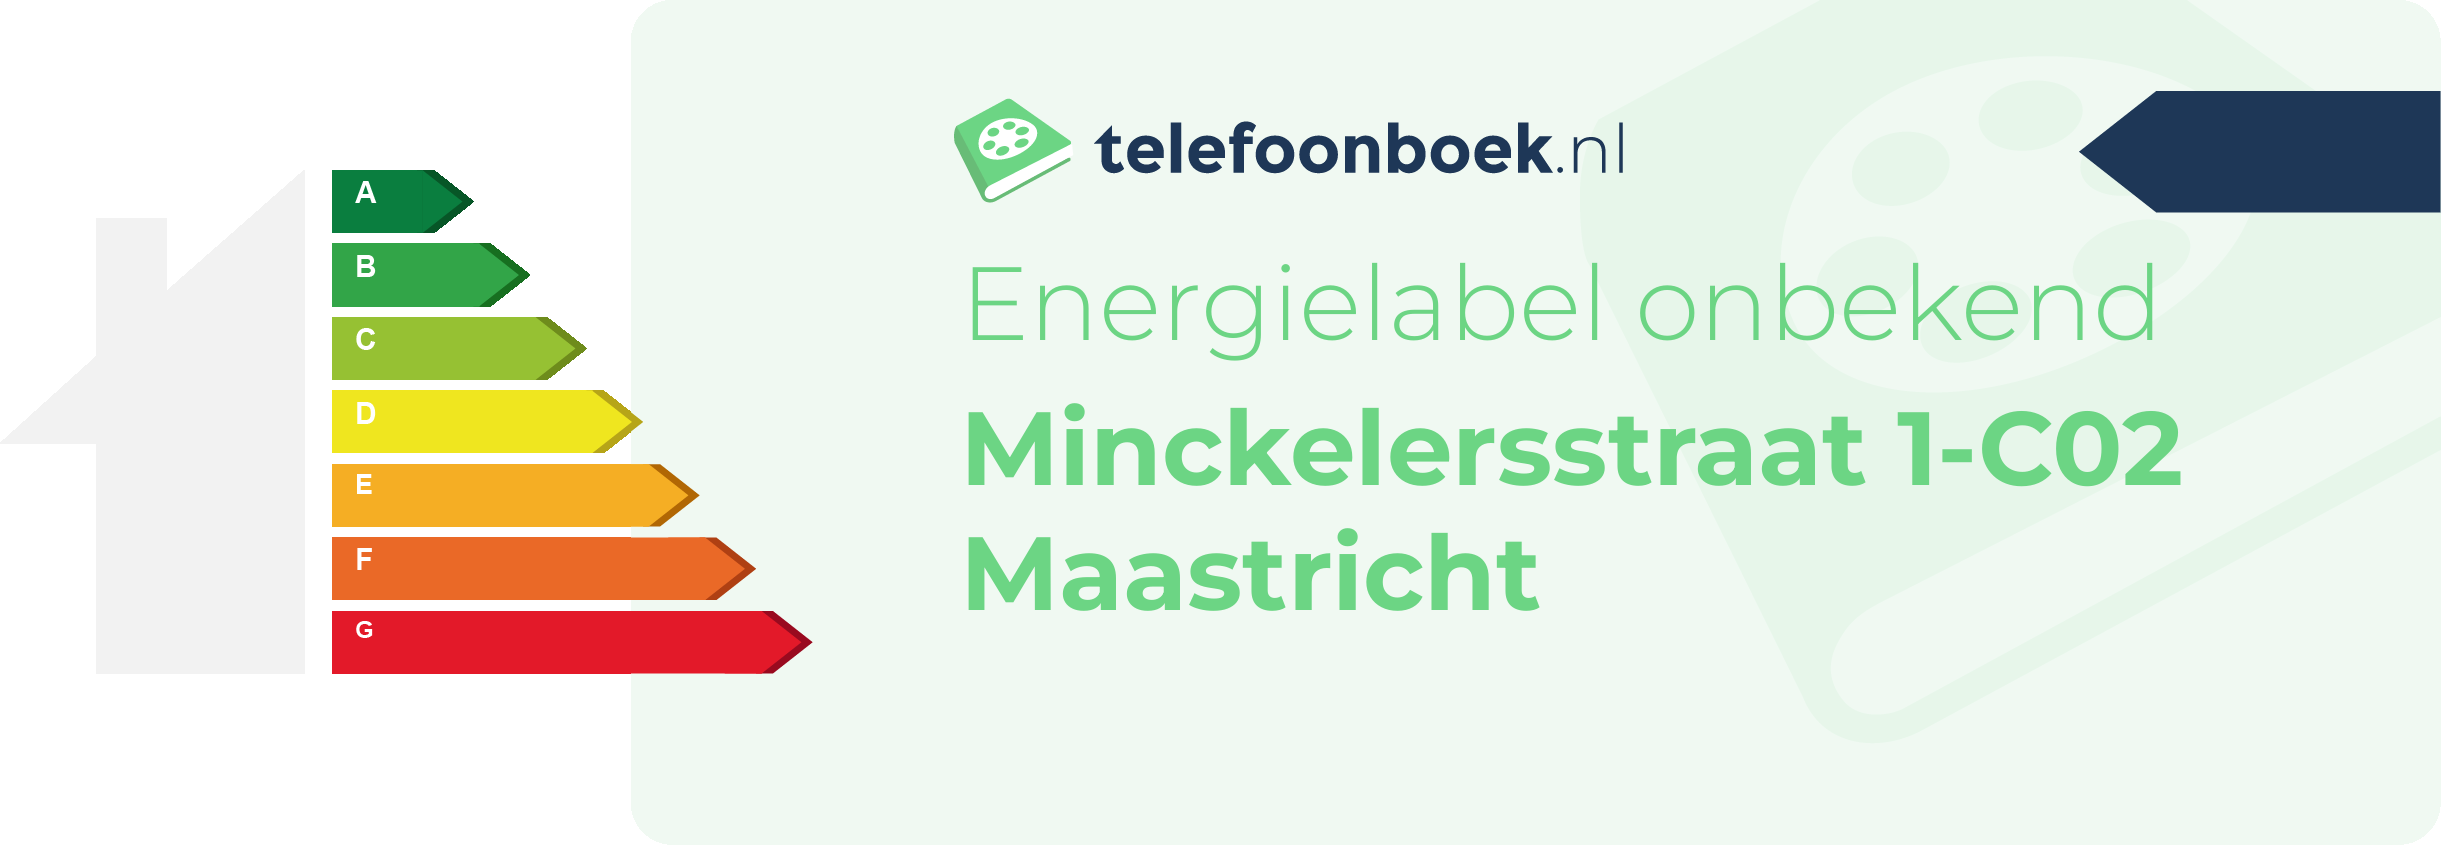 Energielabel Minckelersstraat 1-C02 Maastricht